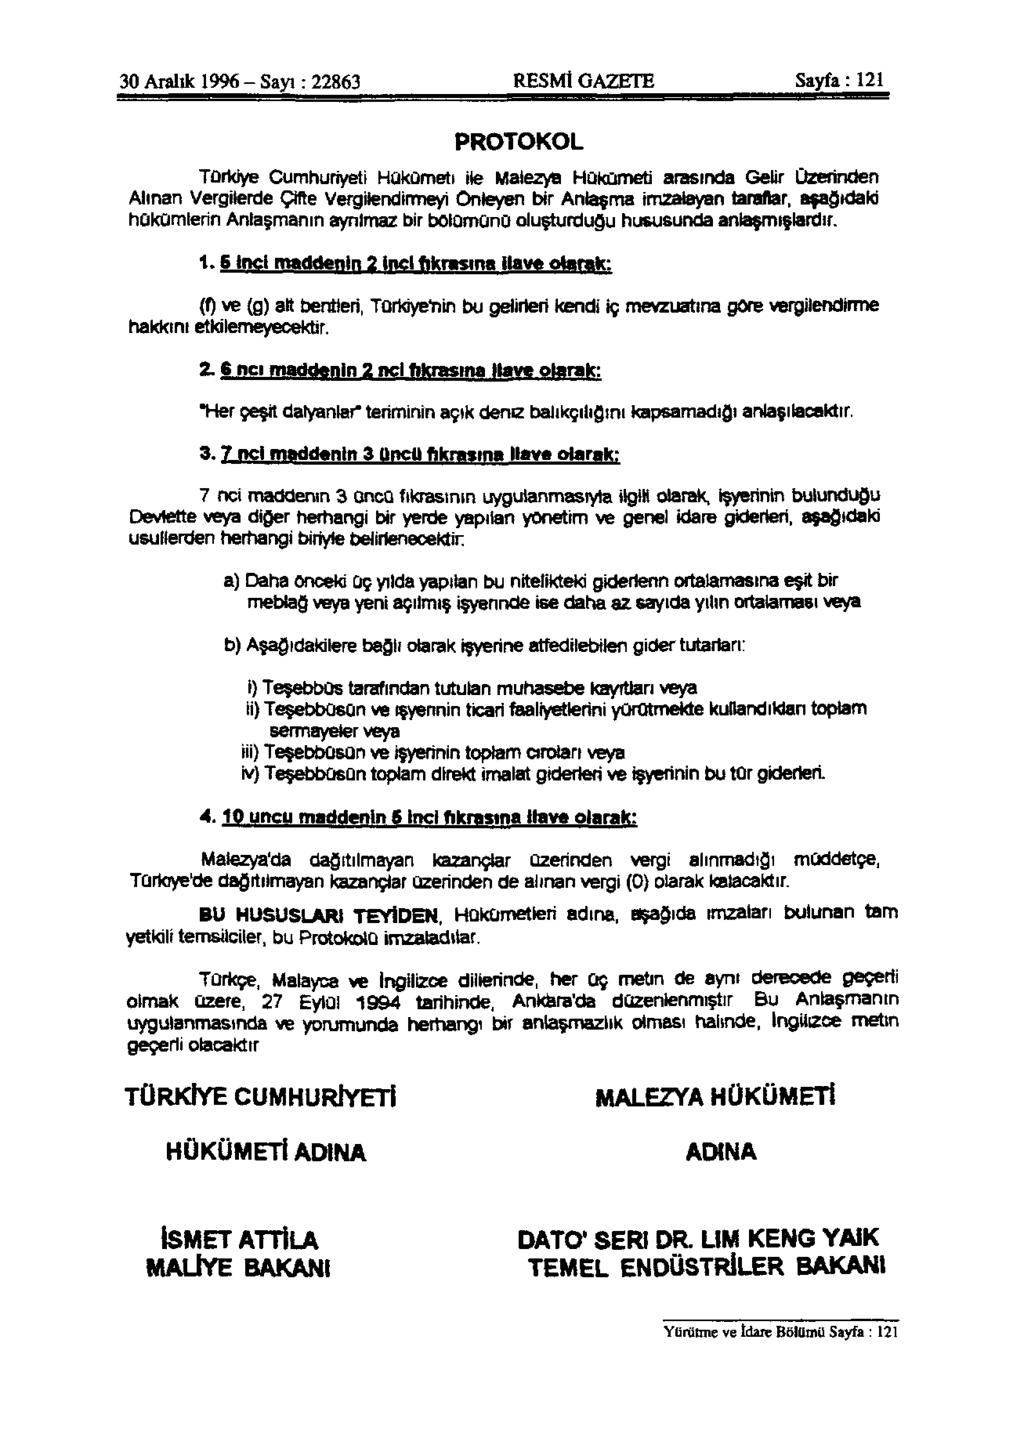 30 Aralık 1996 - Sayı: 22863 RESMİ GAZETE Sayfa: 121 PROTOKOL Türkiye Cumhuriyeti Hükümeti ile Malezya Hükümeti arasında Gelir Üzerinden Alınan Vergilerde Çifte Vergilendirmeyi Önleyen bir Anlaşma